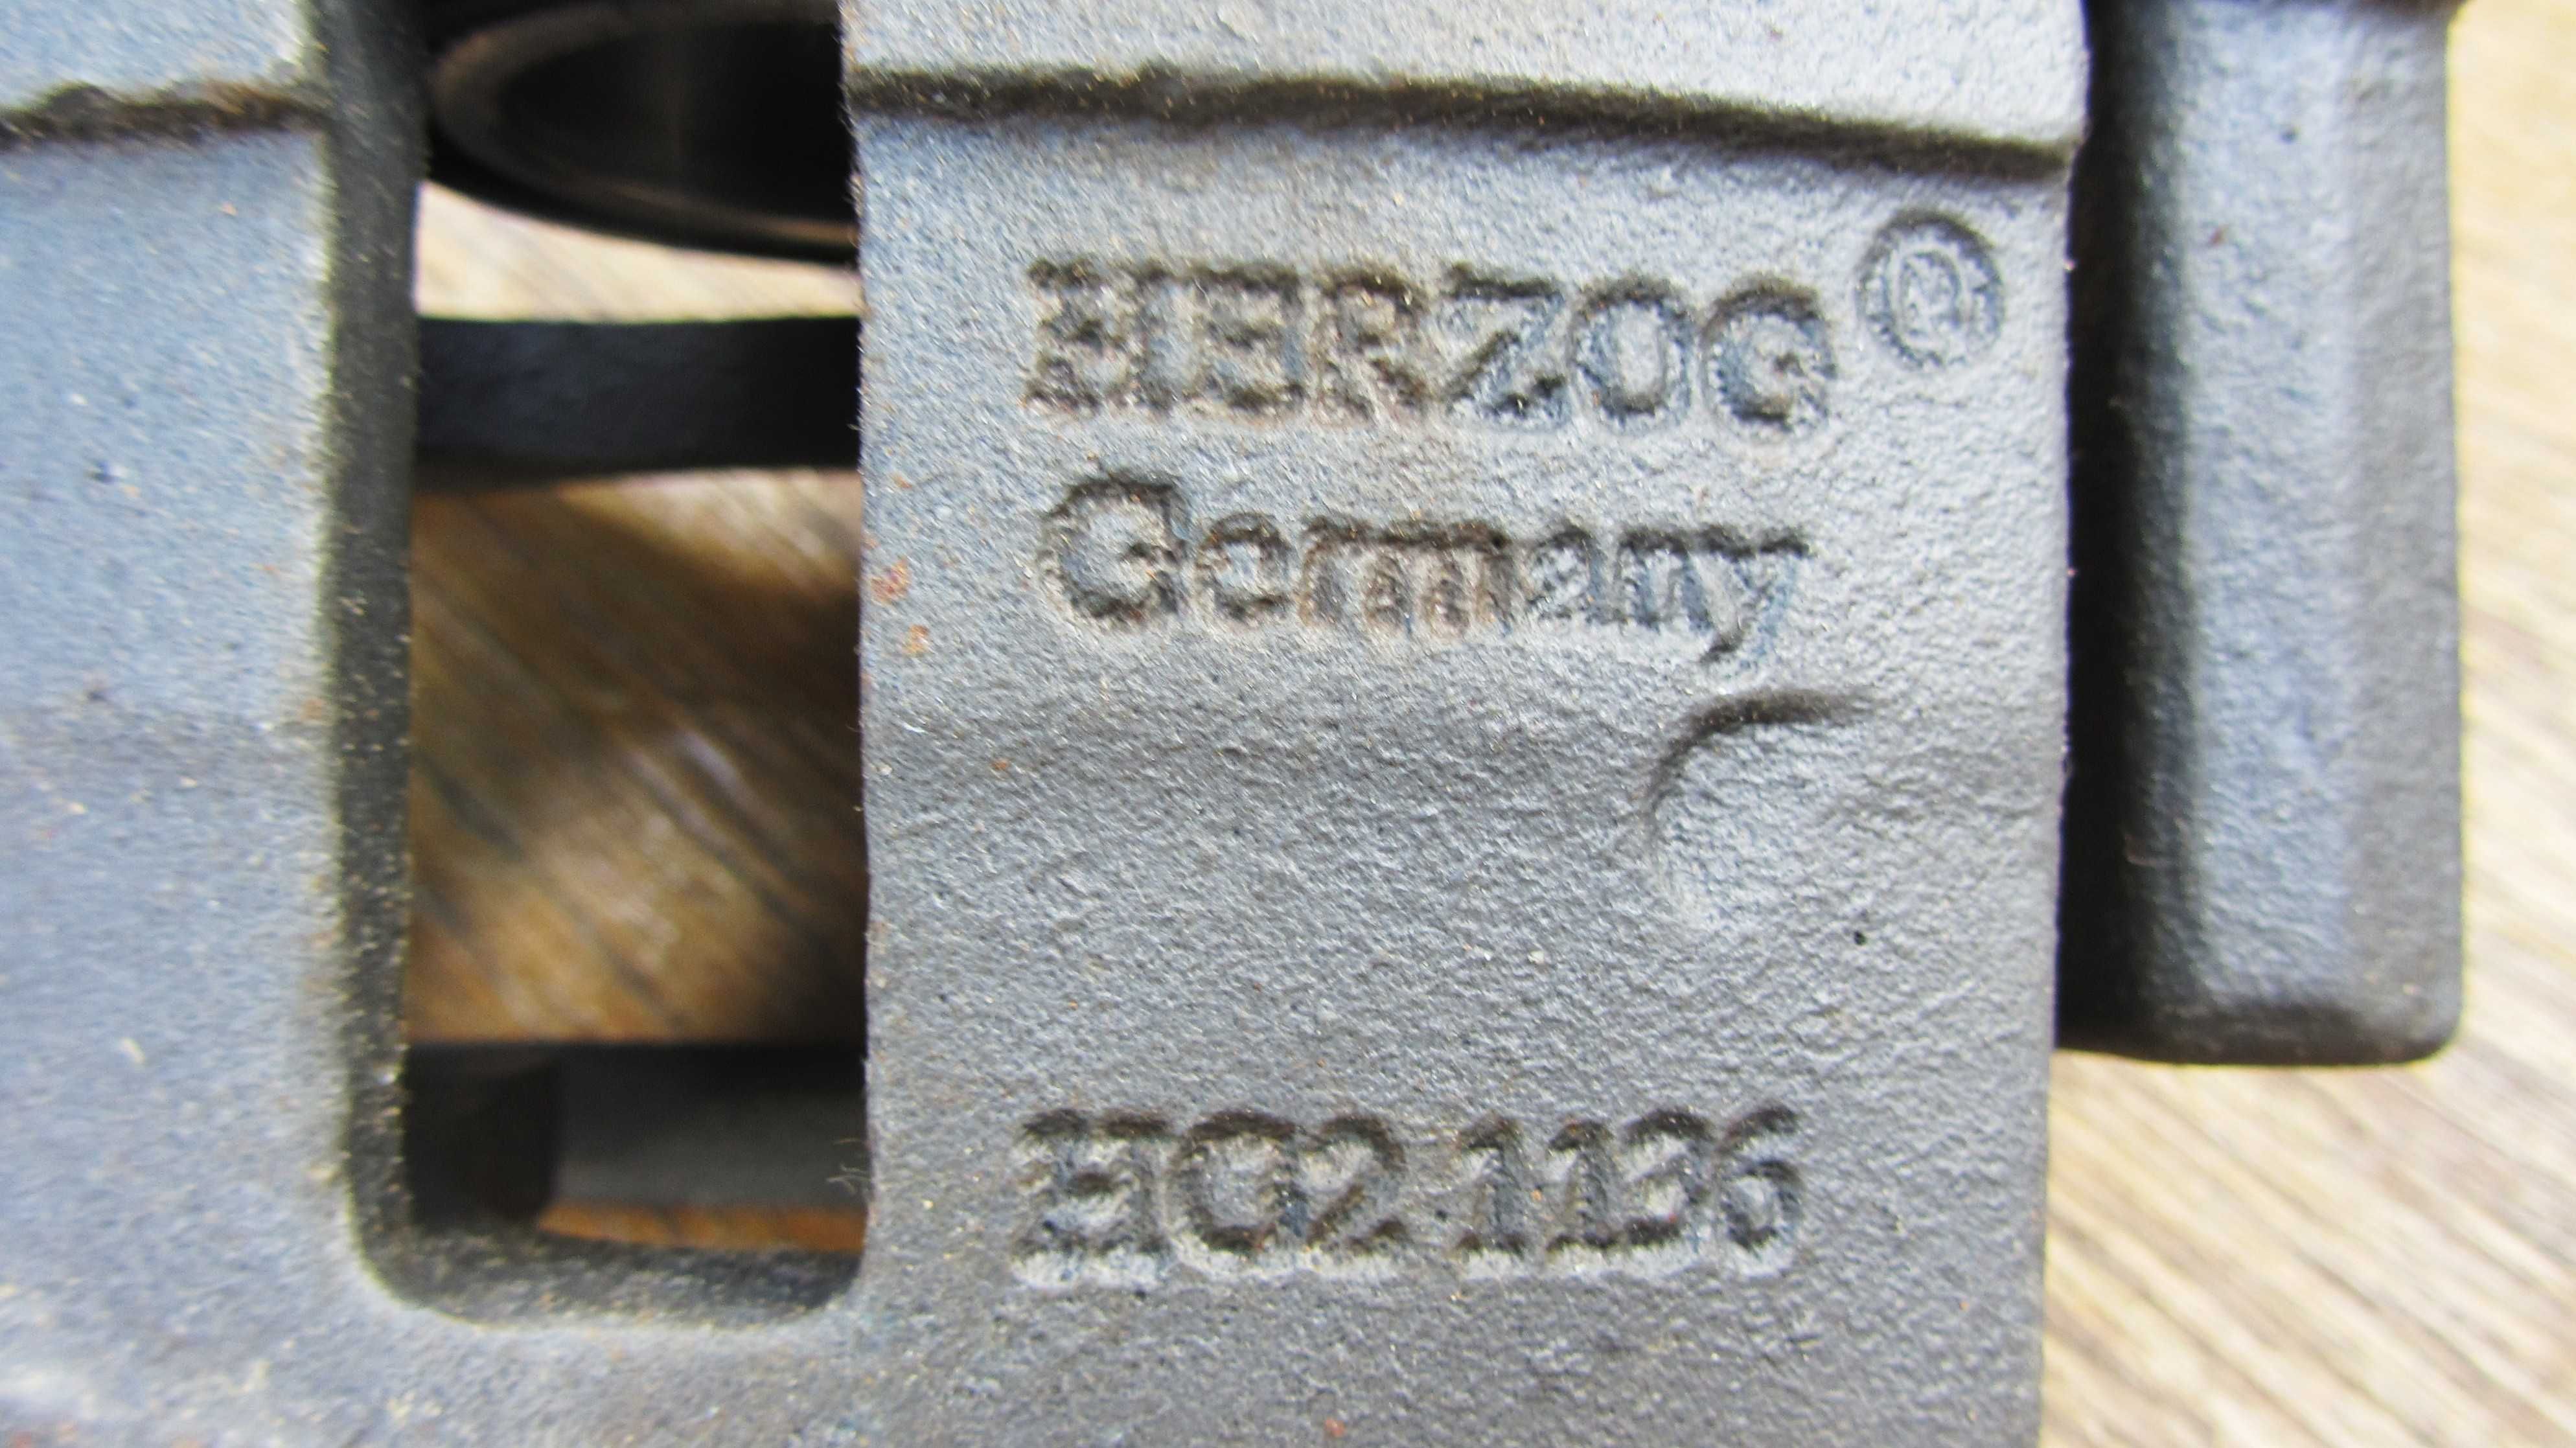 Суппорт Herzog HG21136 правый, новый, цена ниже чем в рознице на 20%